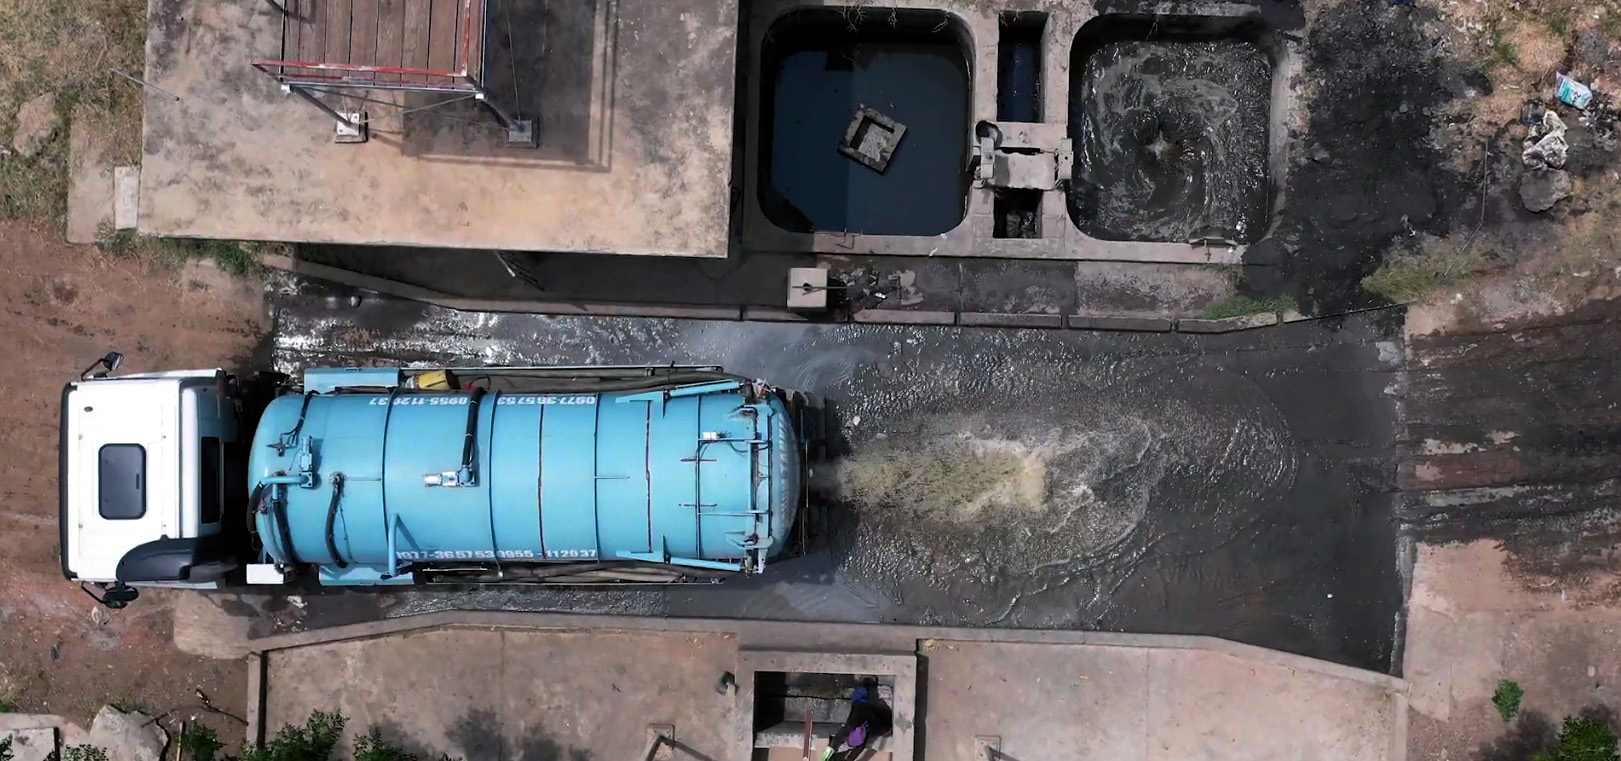 Standbild aus dem Video "Sanitärversorgung für lebenswerte Städte". Ein Tanklastwagen liefert Abwasser an einer Kläranlage ab.